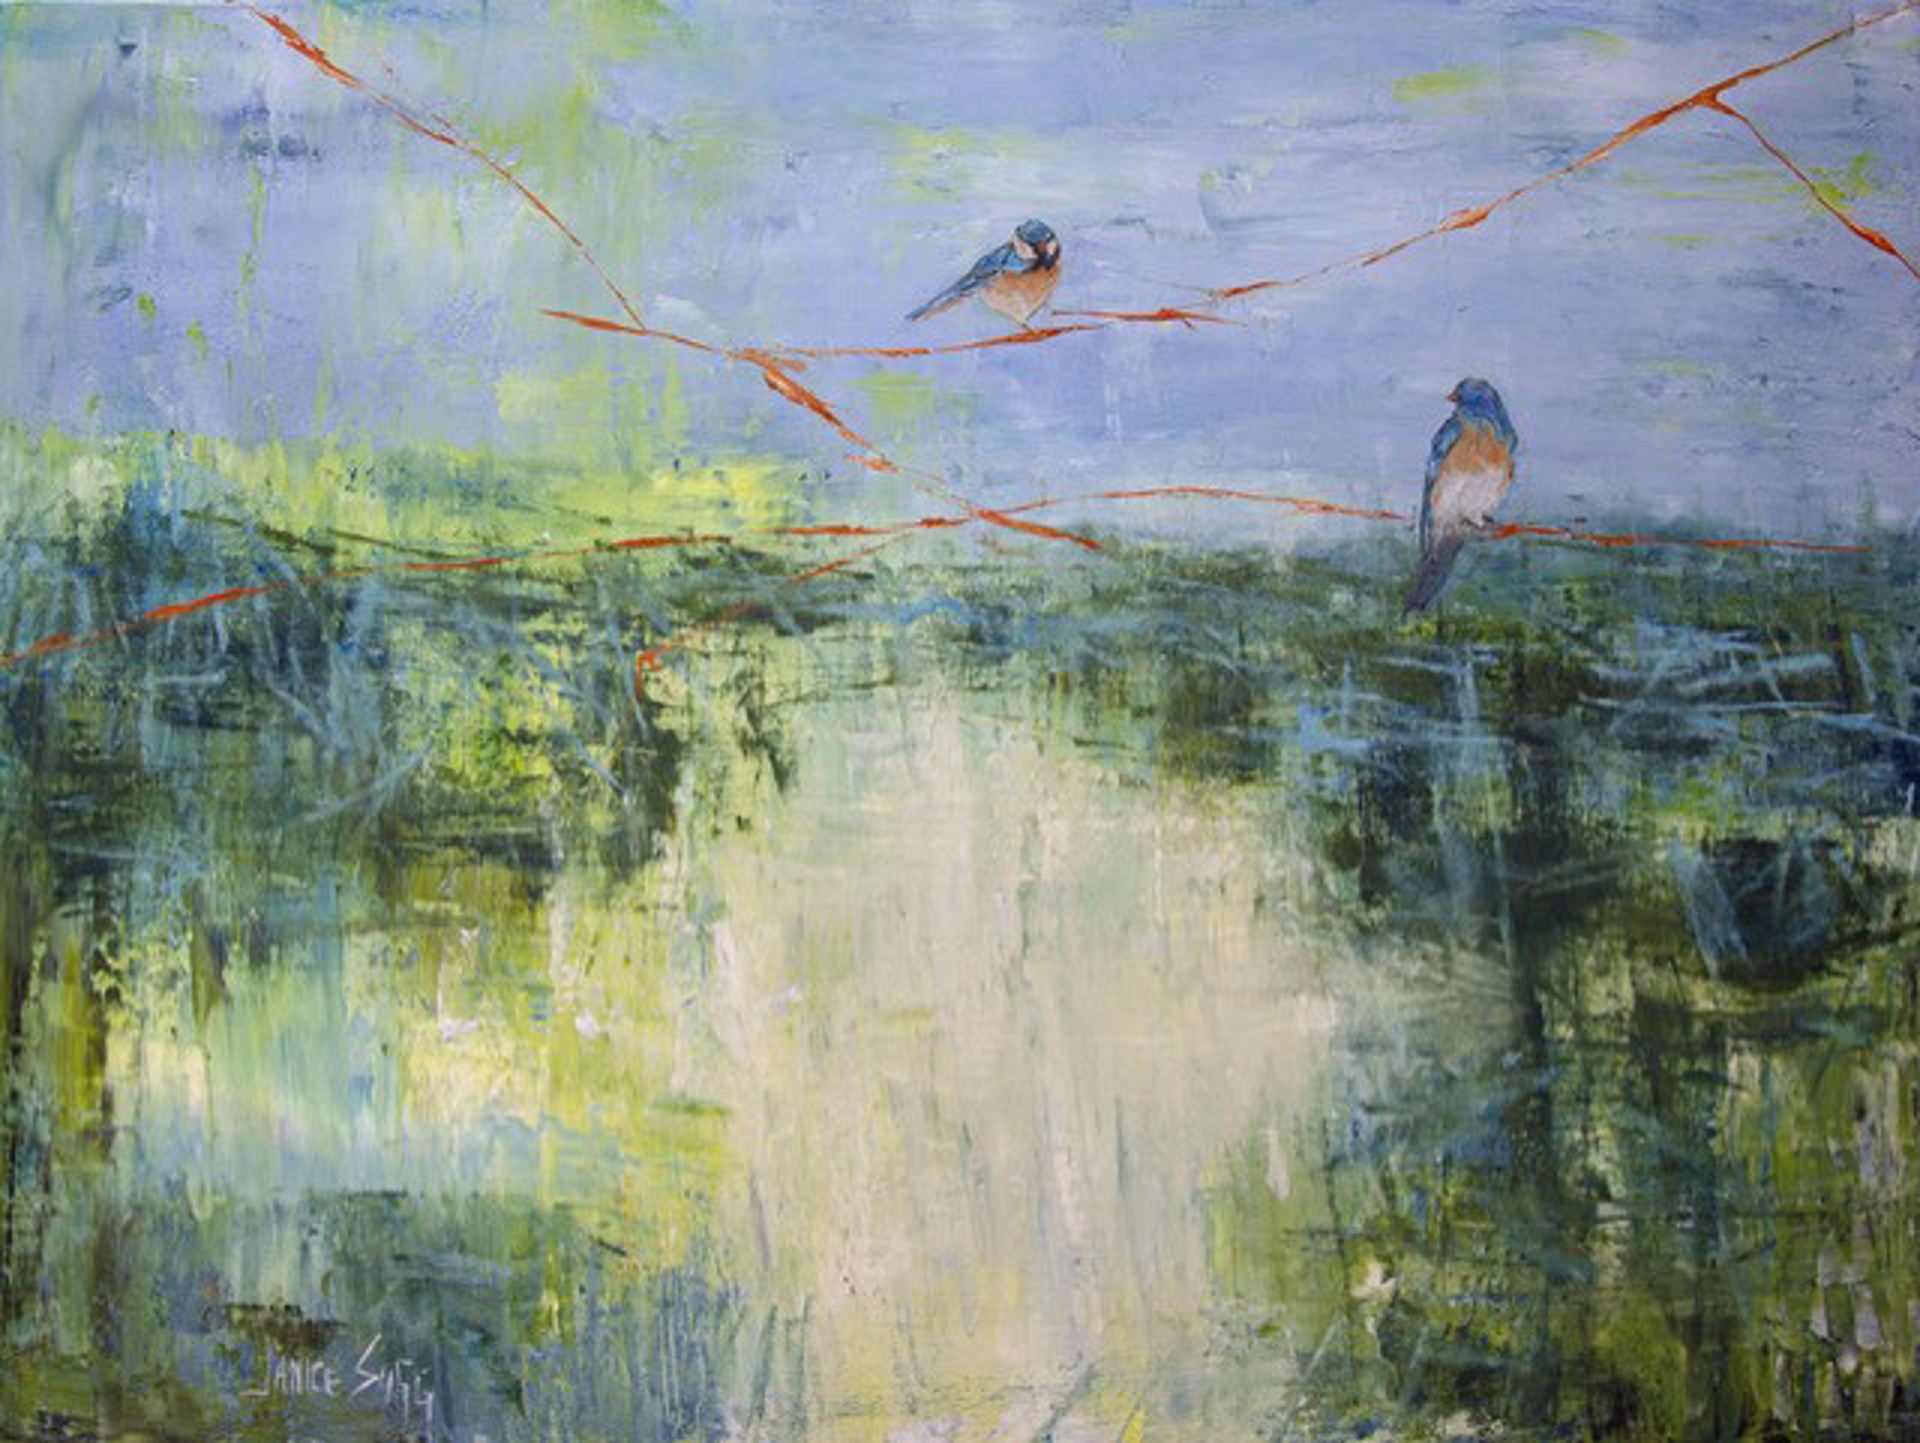 Blue Bird Pair by Janice SUGG